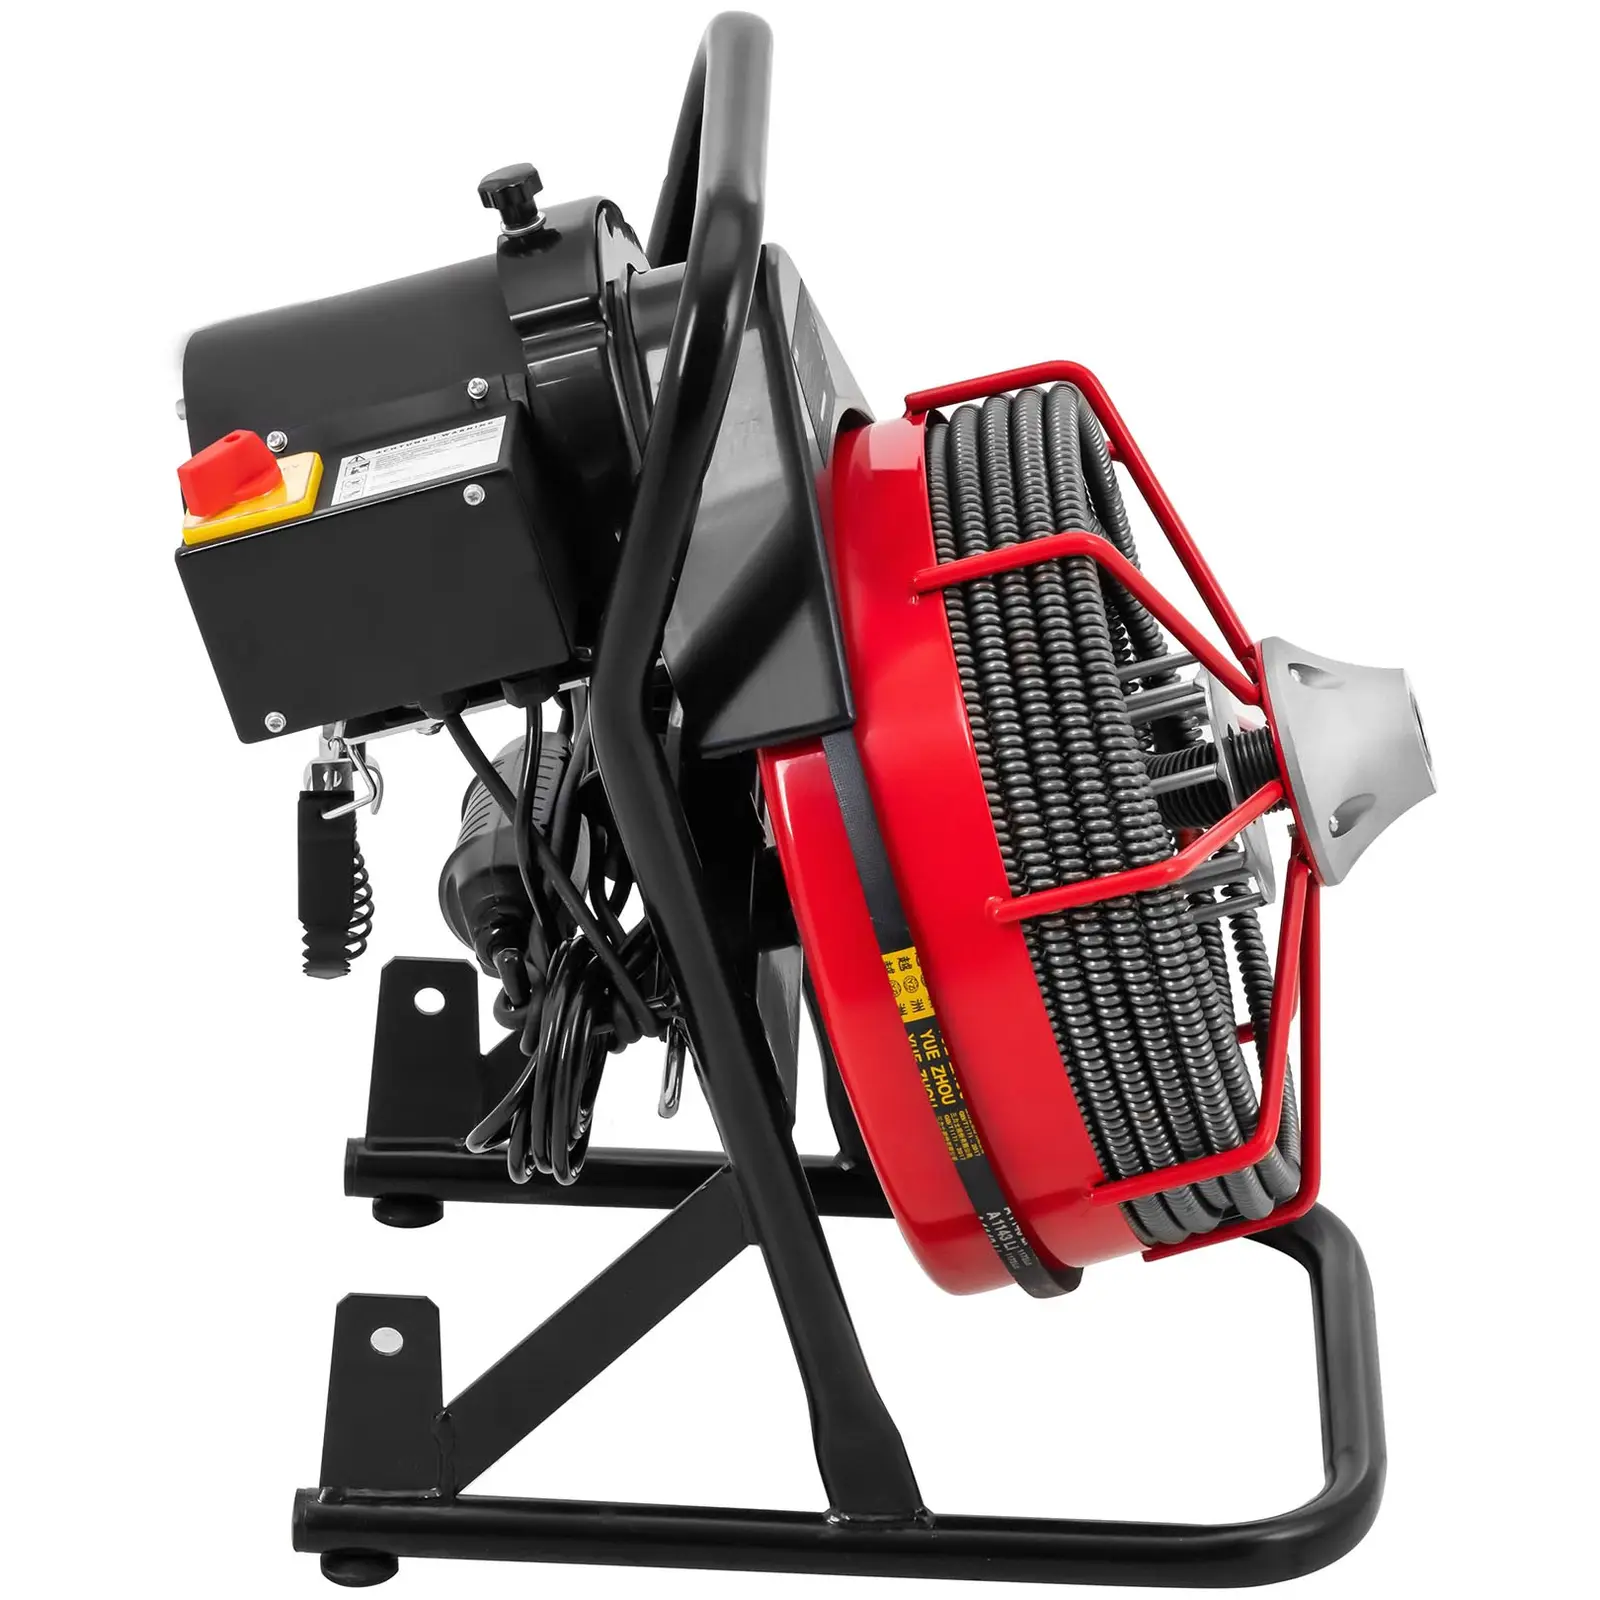 Trommel Rohrreinigungsmaschine offenes Design - 390 W - 1480 U/min - Ø 32 - 100 mm